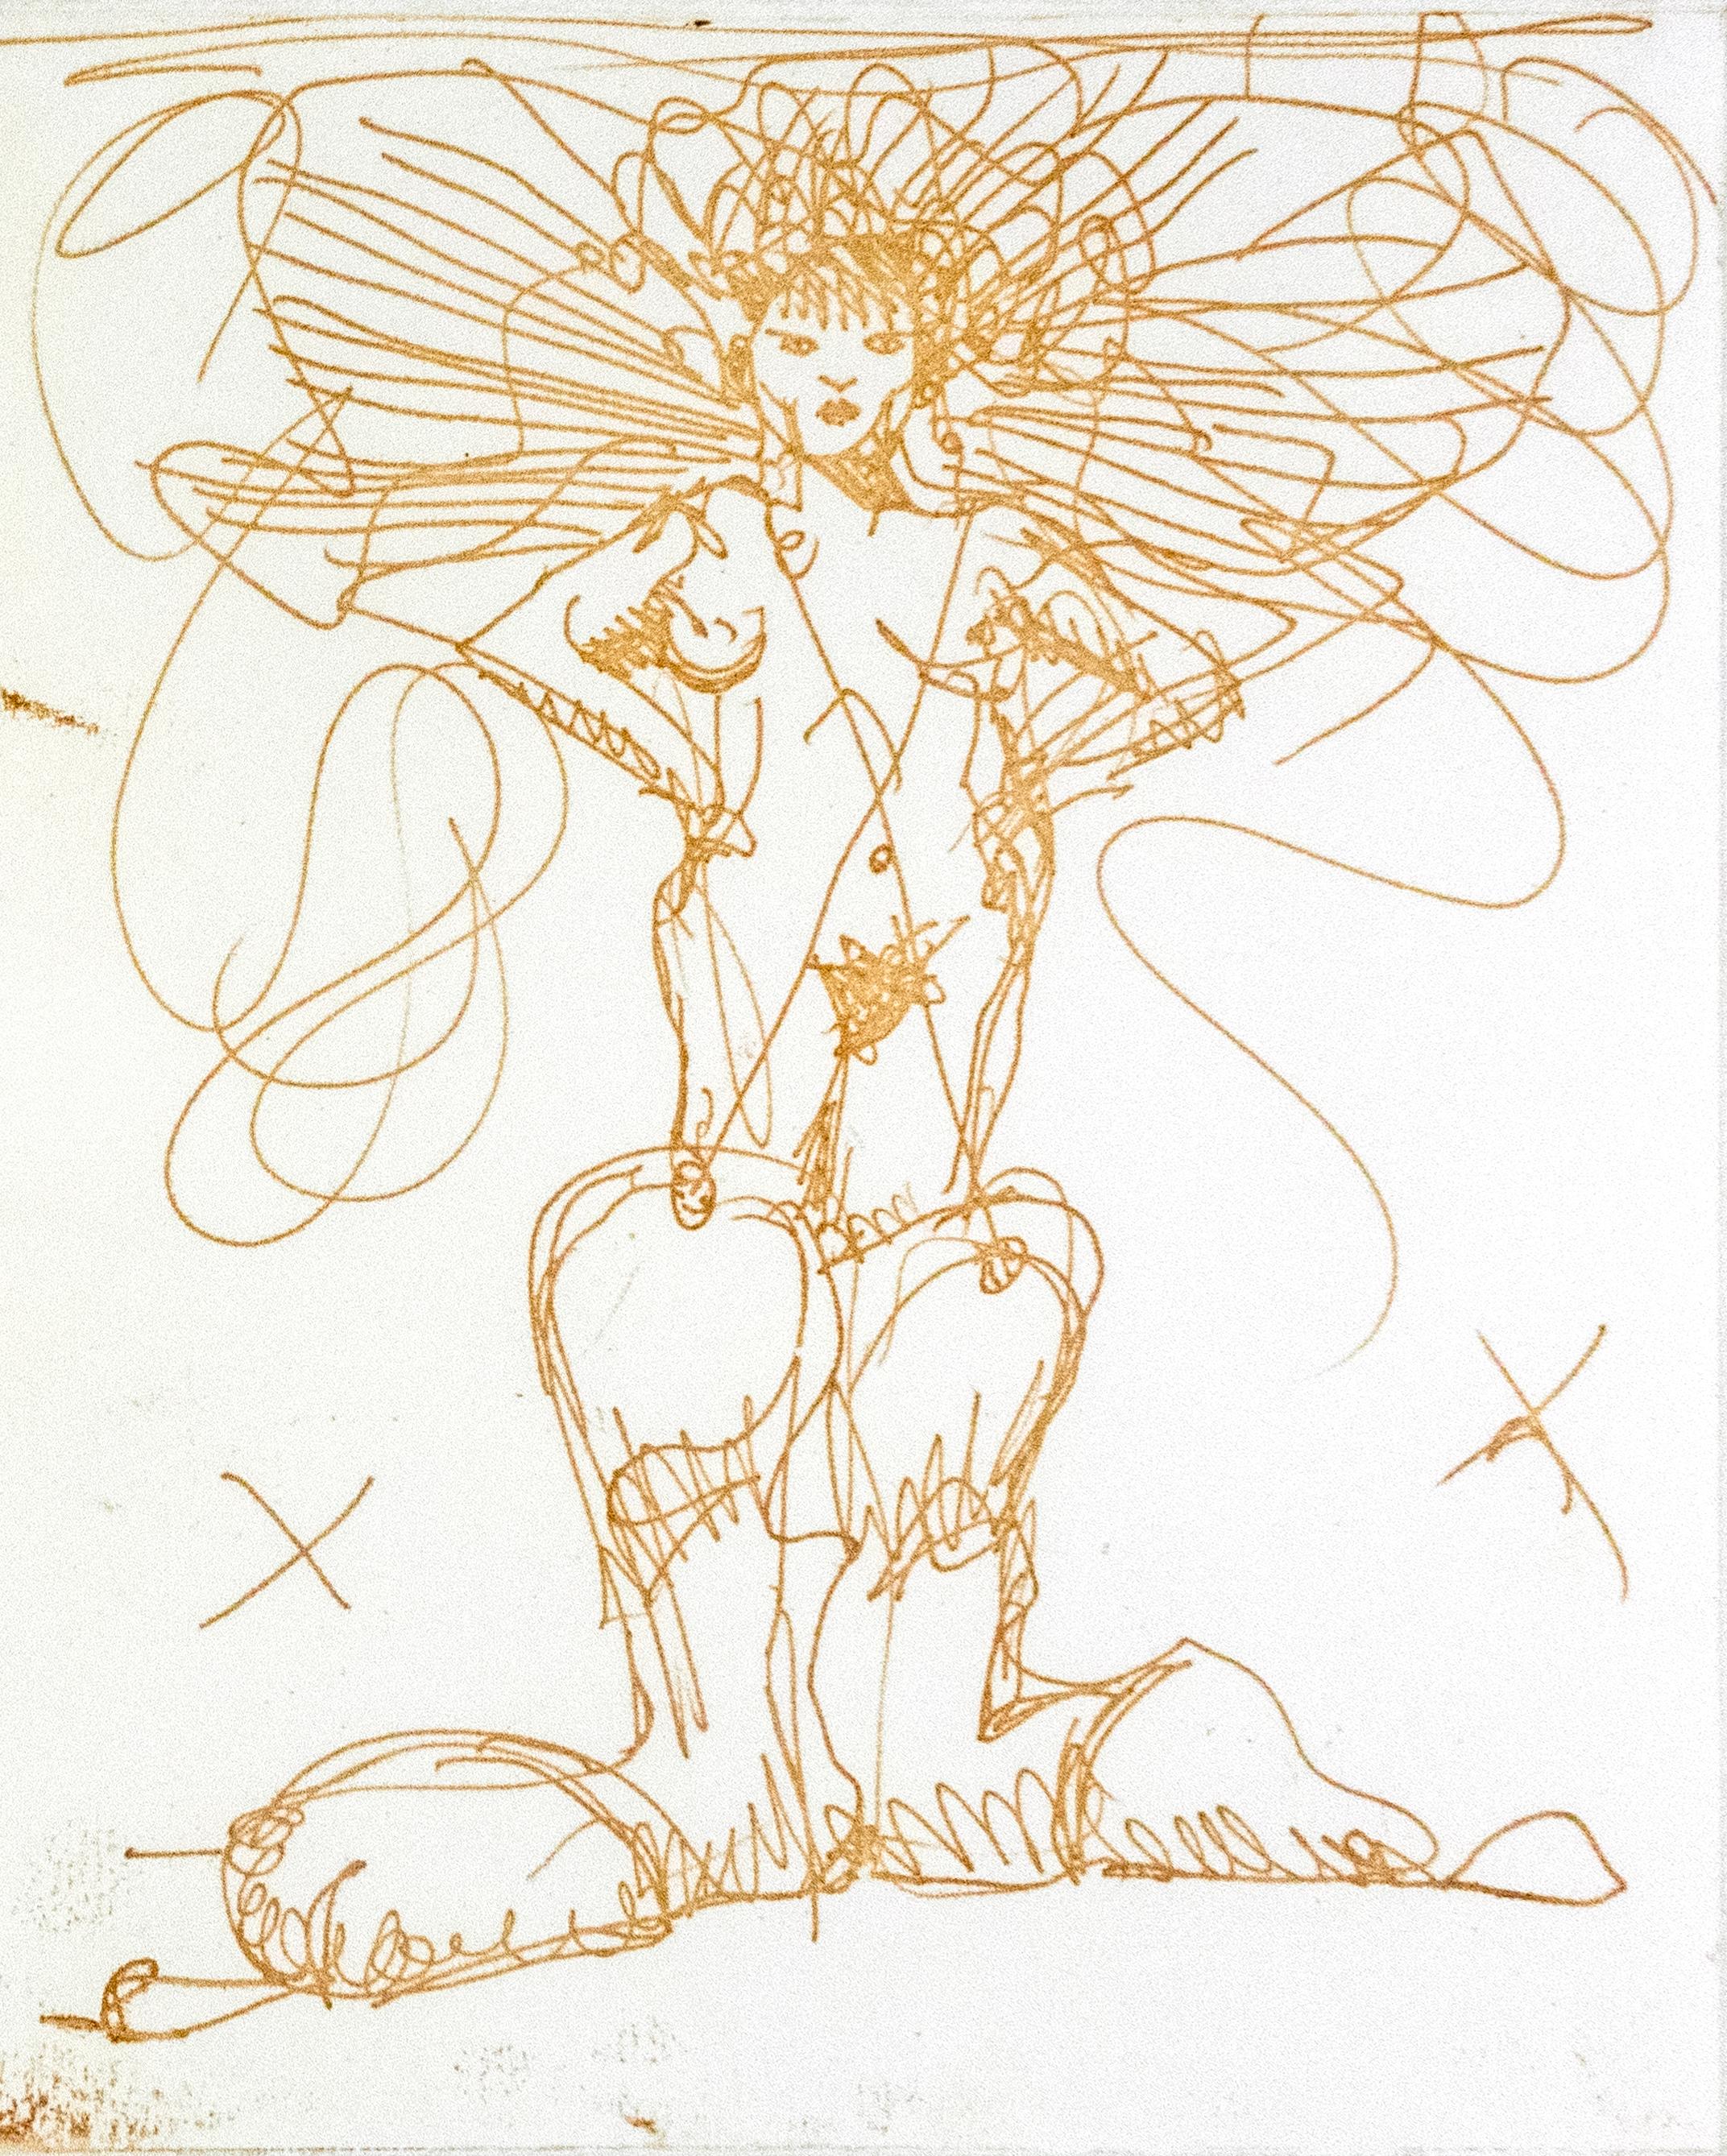 Cette impression ludique et érotique de Claes Oldenburg est imprimée en or chatoyant. Une femme nue portant des bottes de cow-boy surdimensionnées se tient debout, les mains sur les hanches, un X griffonné de chaque côté de son torse. Des lignes